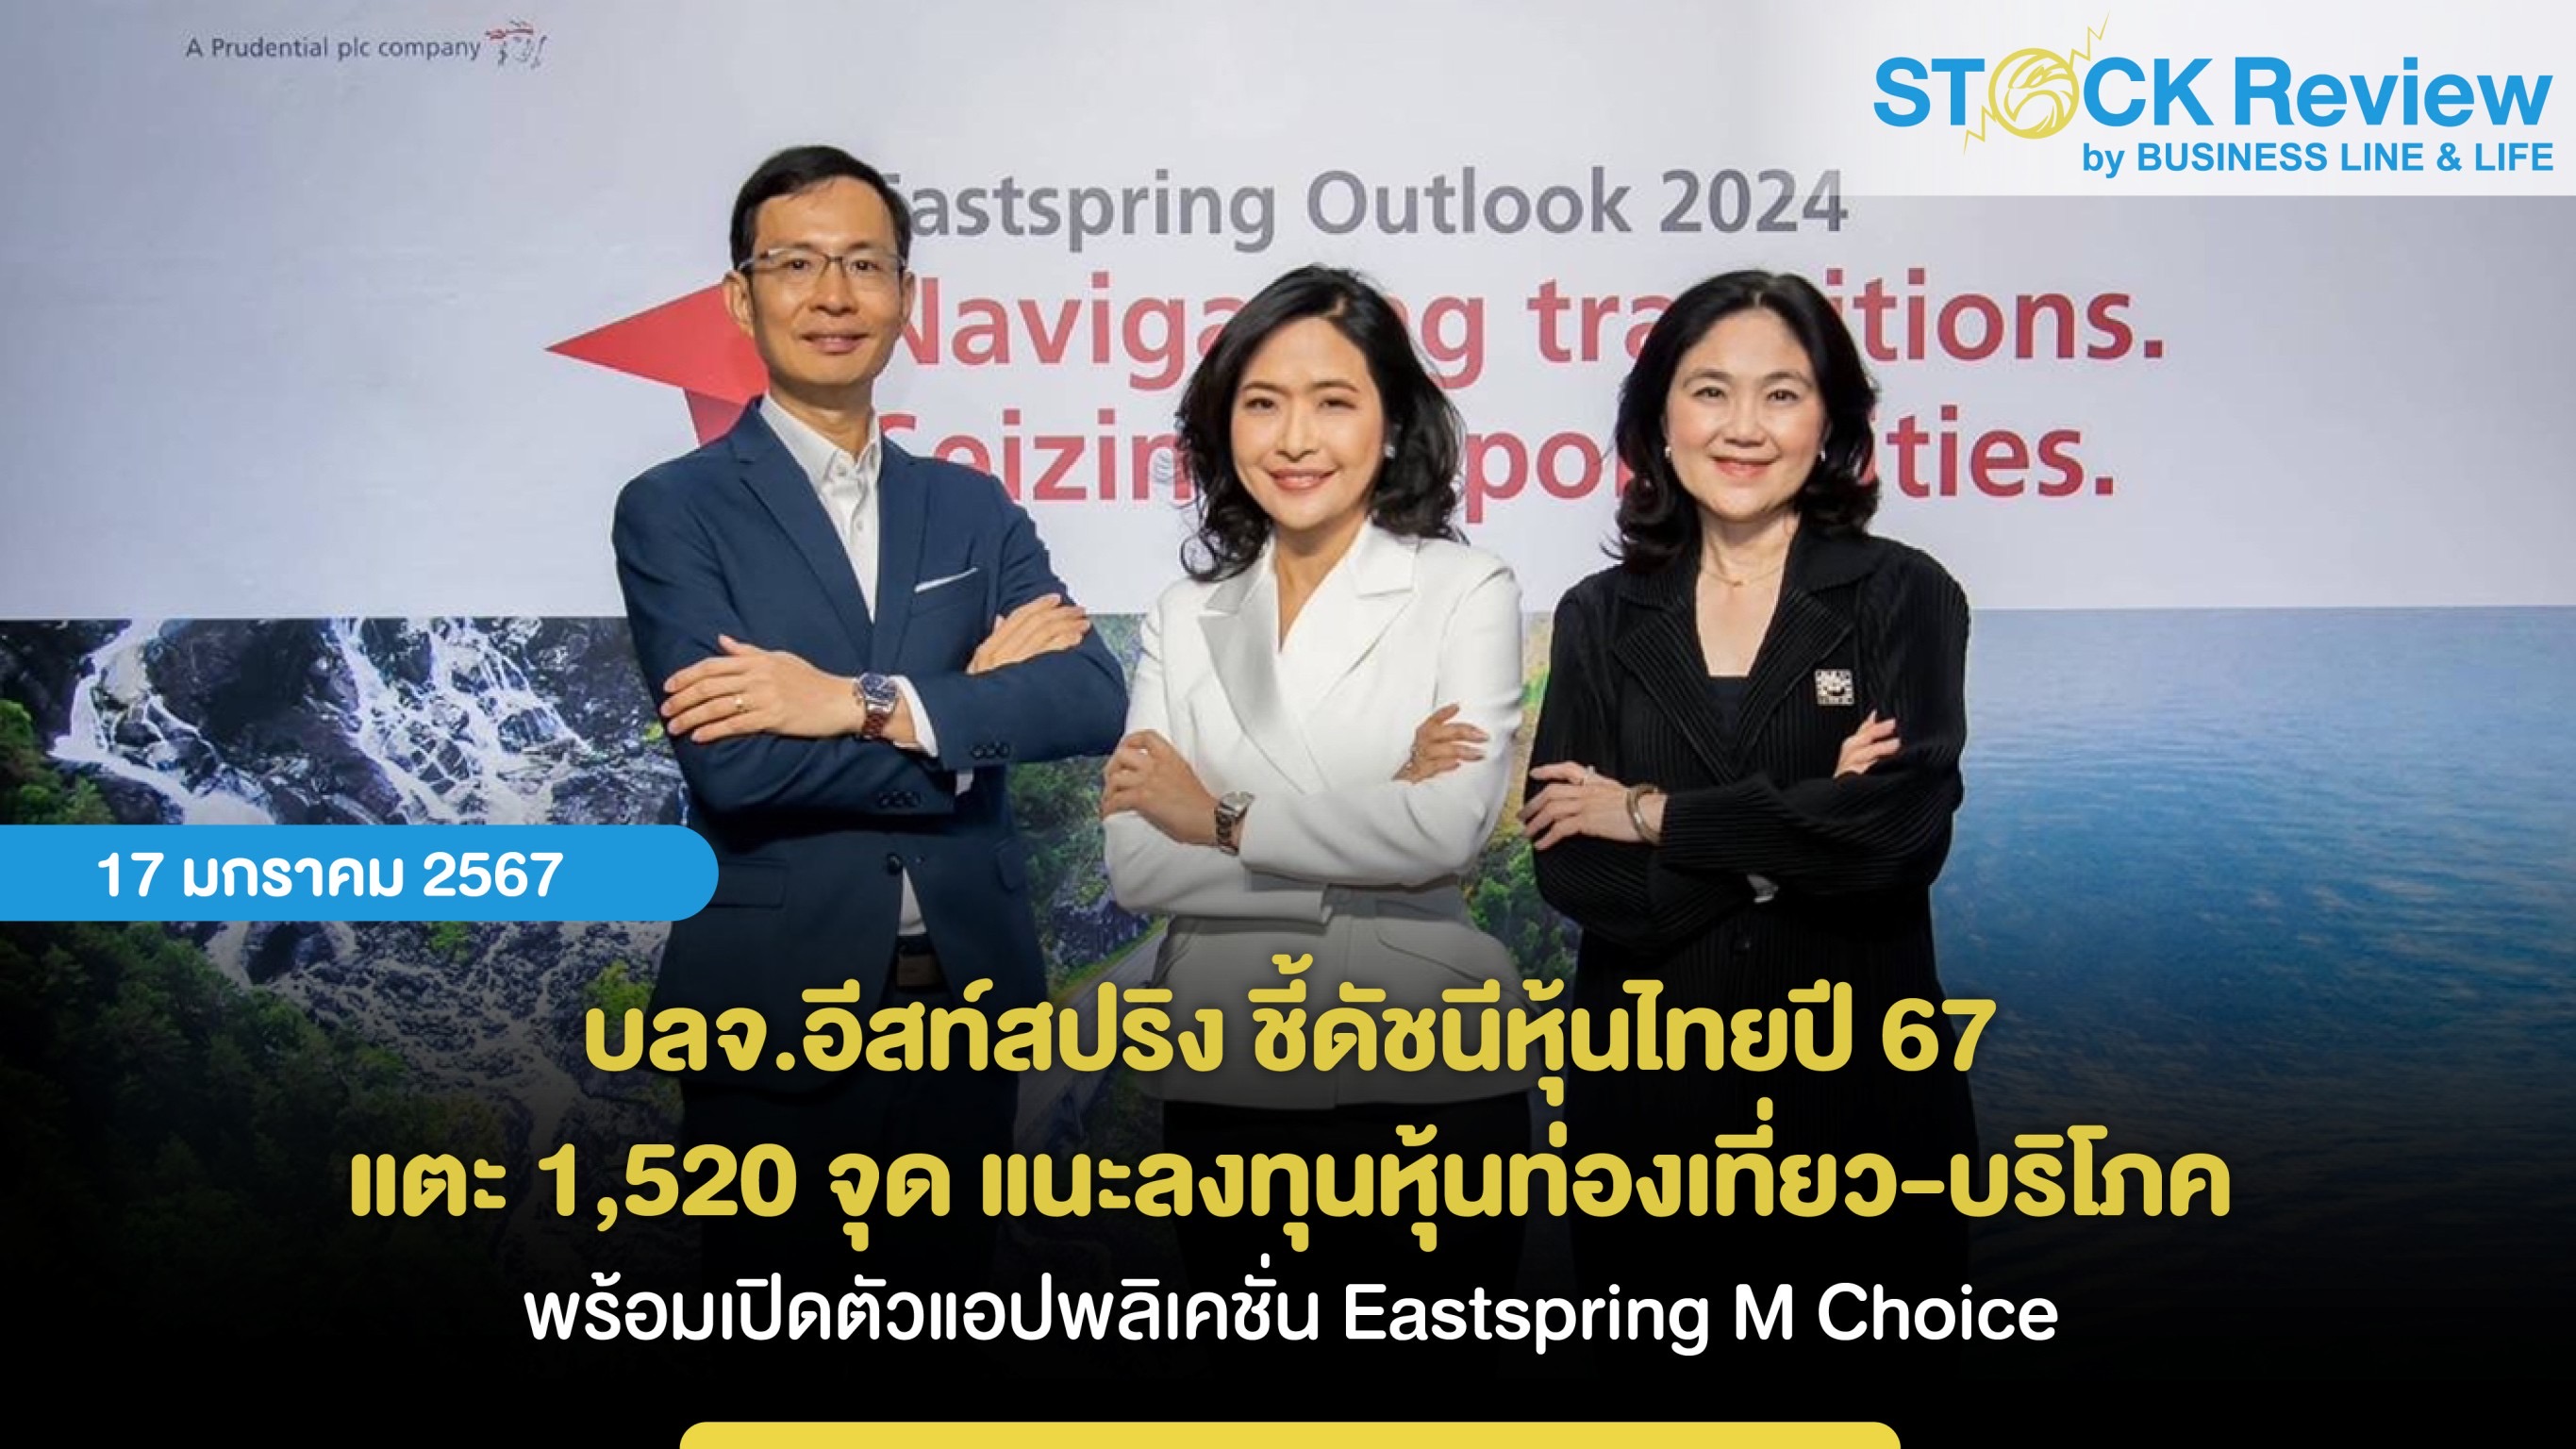 บลจ.อีสท์สปริง ชี้ดัชนีหุ้นไทยปี 67 แตะ 1,520 จุด และลงทุนหุ้น “ท่องเที่ยว-บริโภค” พร้อมเปิดตัวแอปพลิเคชั่น Eastspring M Choice